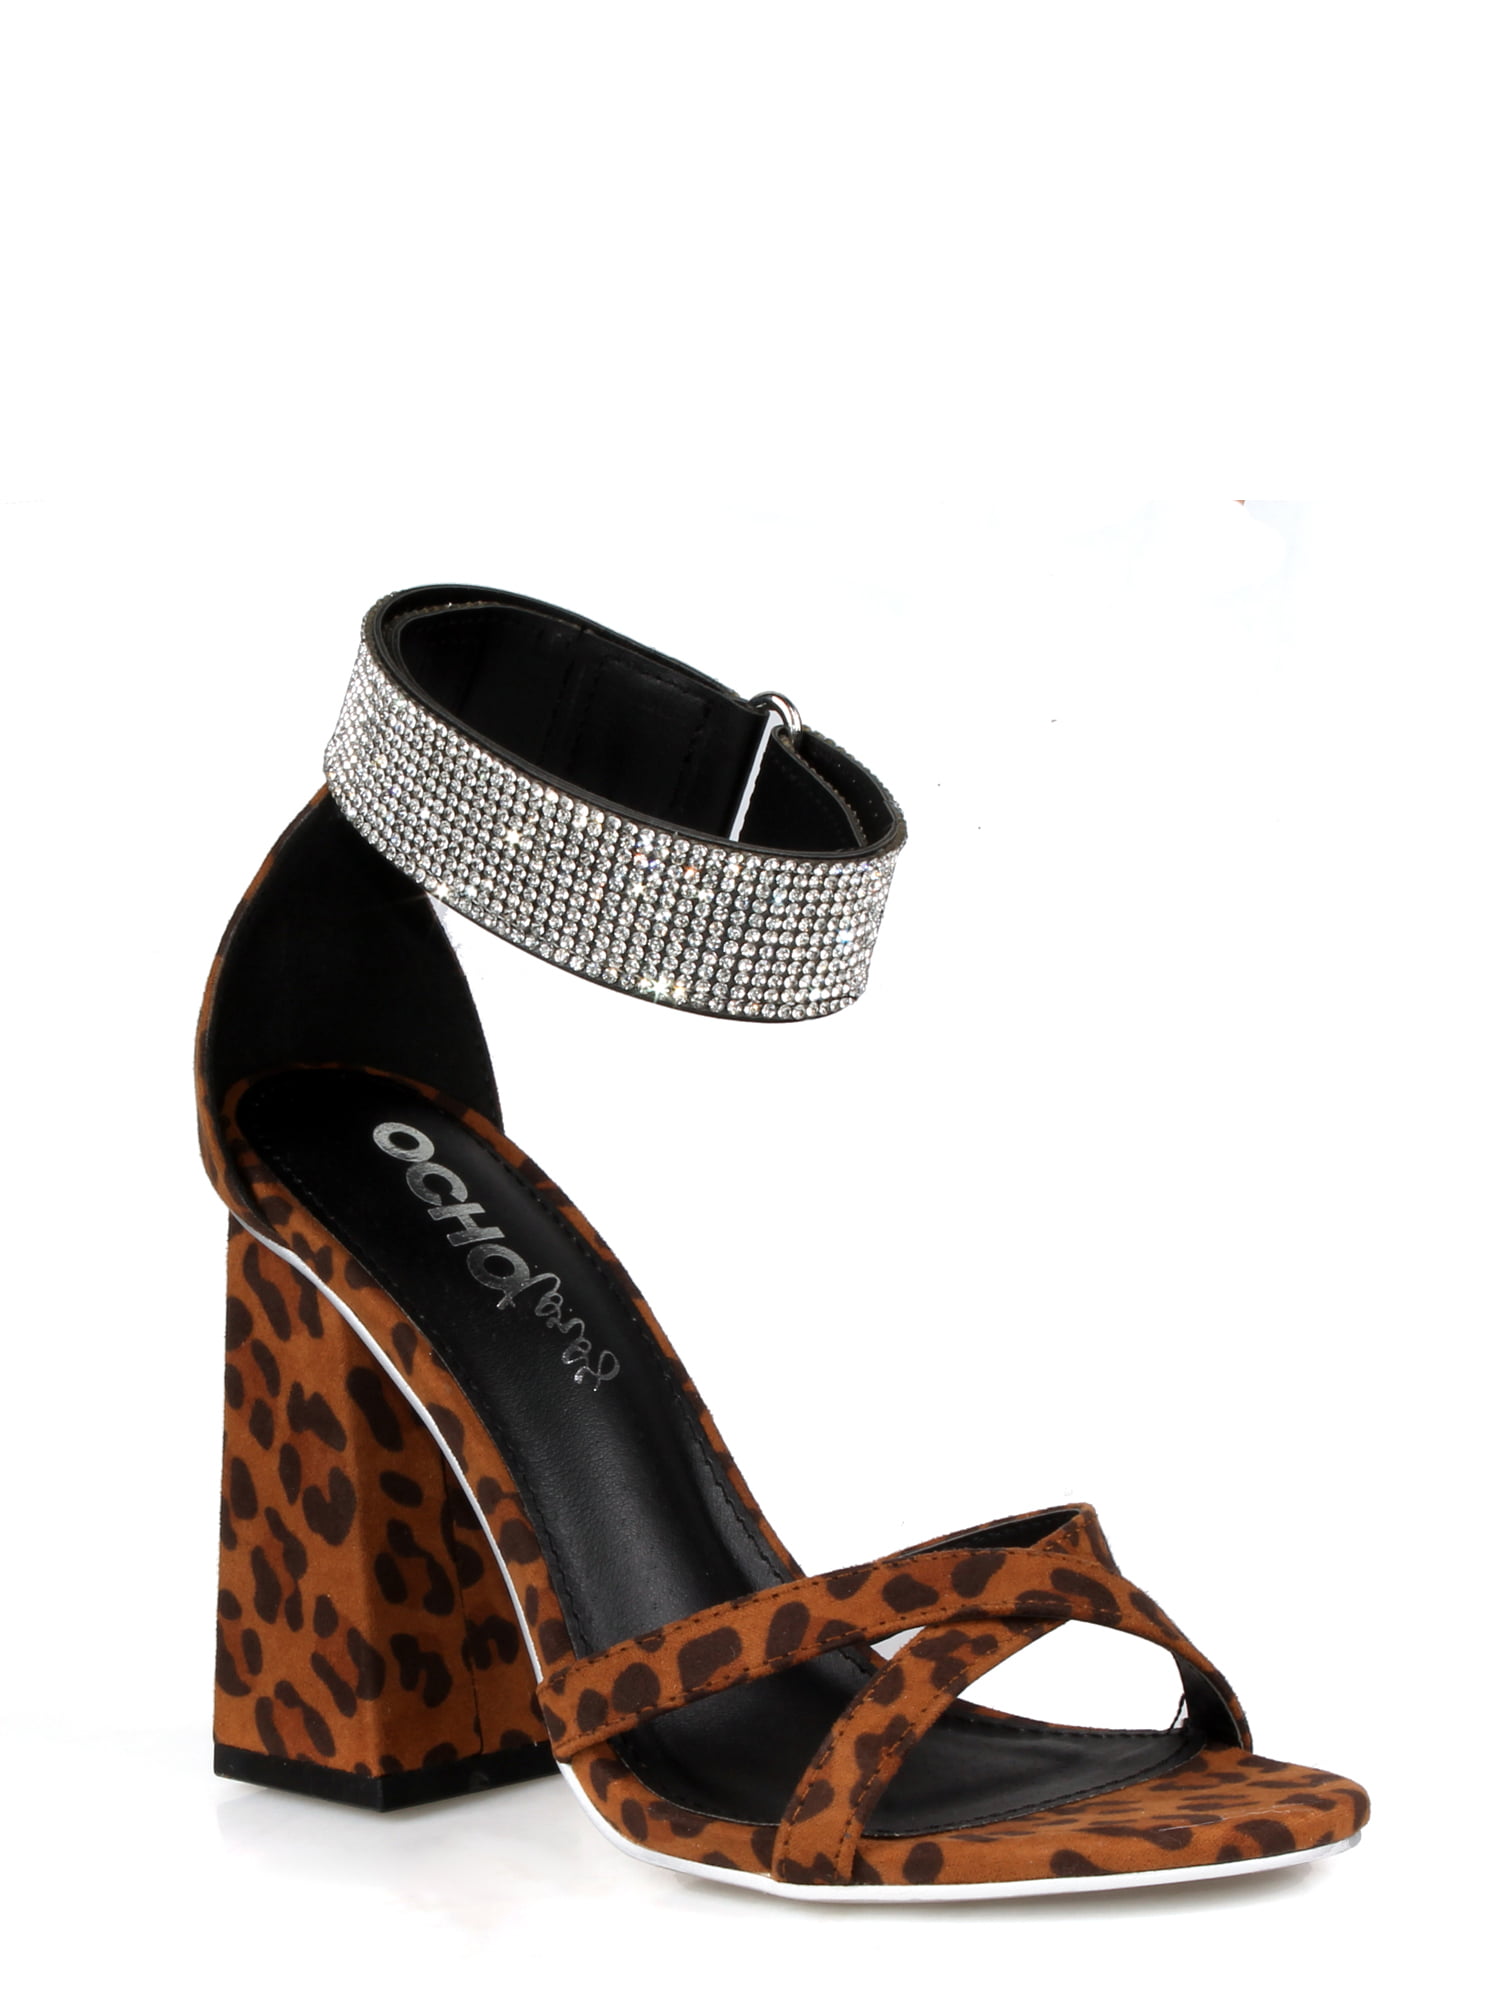 Leopard Print Heels Sandals Women | Women's Transparent Heel Sandal - Women  Sandals - Aliexpress